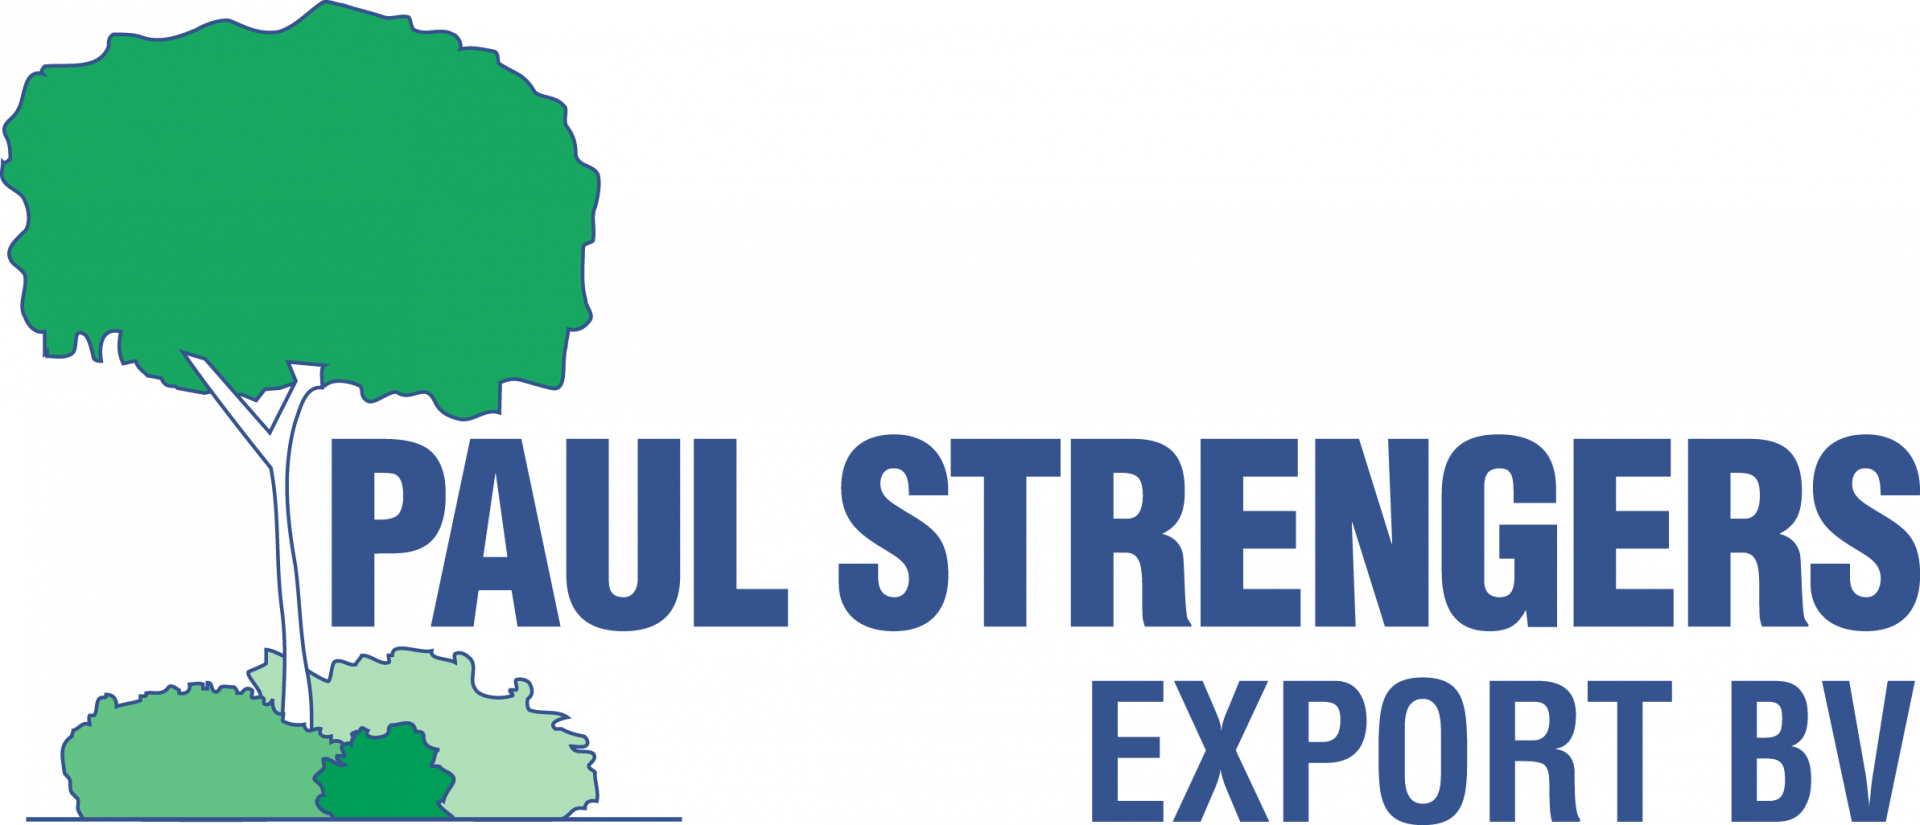 Paul Strengers Export B.V.